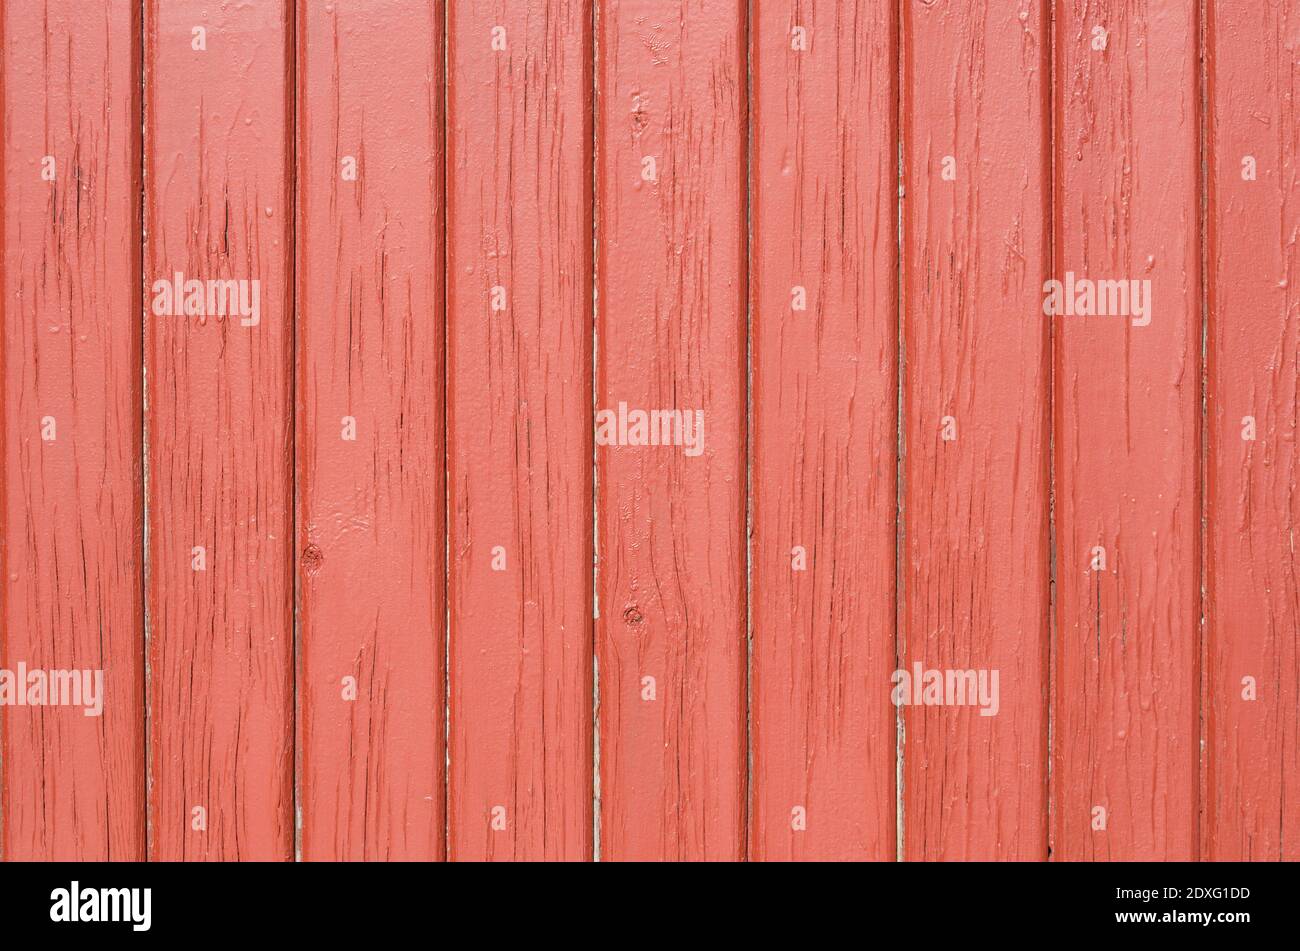 Una tabla de madera roja, en posición vertical, para el fondo del día de San Valentín, mundo rural, eventos de invitación y carteles Foto de stock